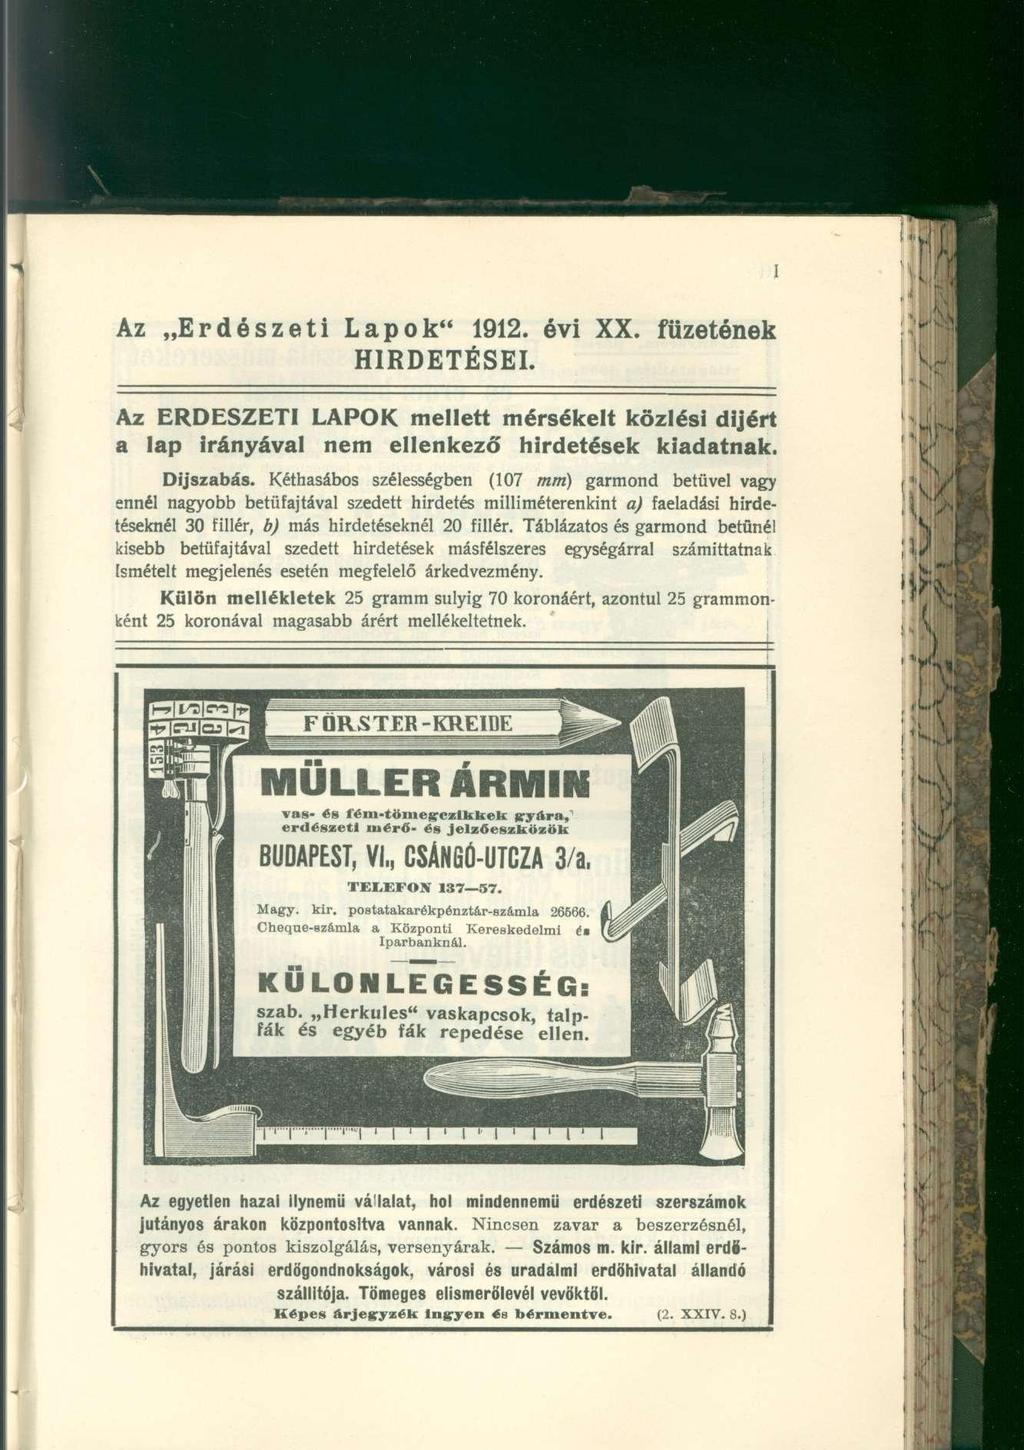 Az Erdészeti Lapok" 1912. évi XX. HIRDETÉSEI. füzetének Az ERDÉSZETI LAPOK mellett mérsékelt közlési díjért a lap Irányával nem ellenkező hirdetések kiadatnak. Díjszabás.